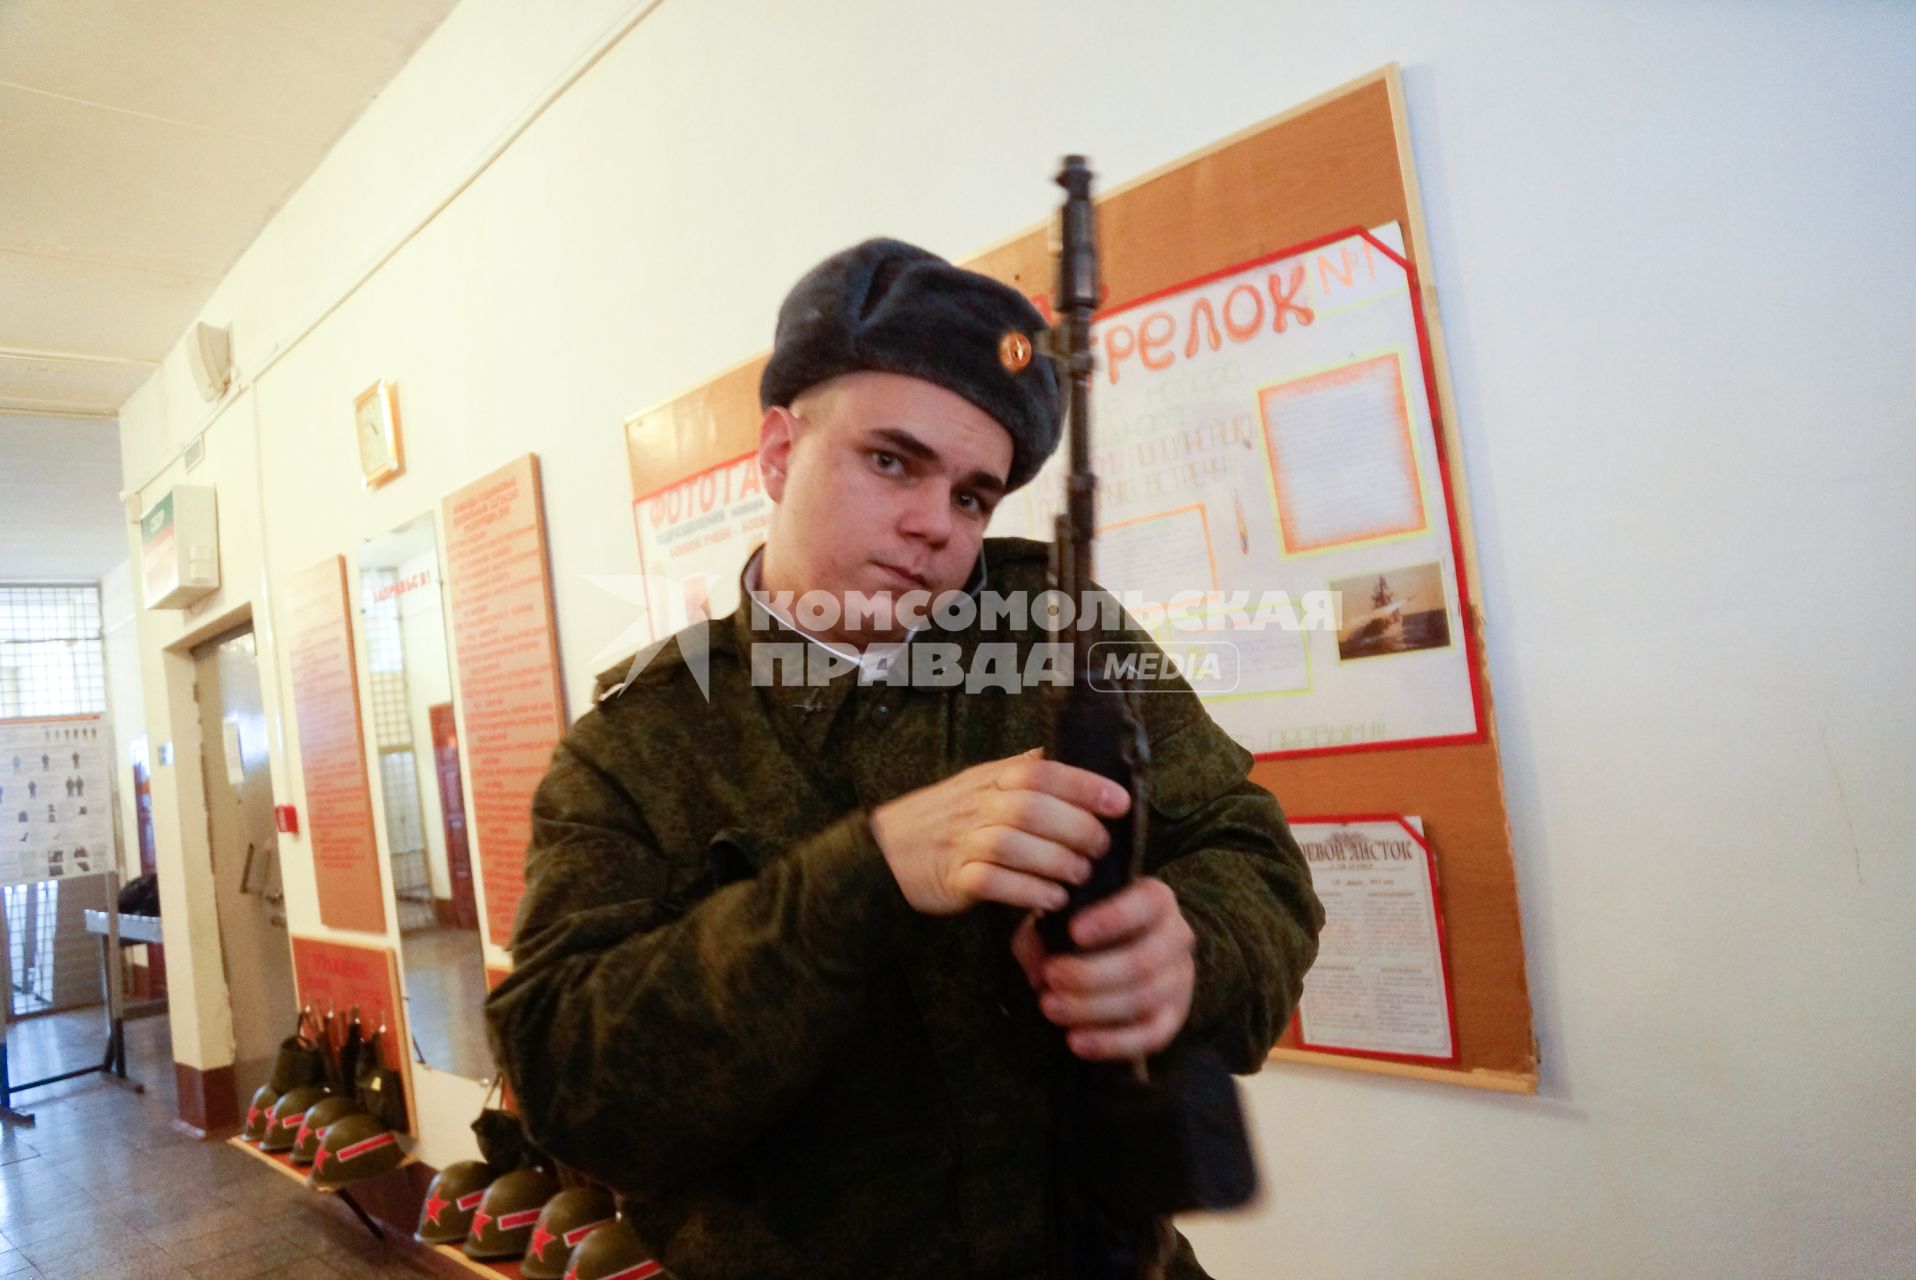 В Еланском военном гарнизоне к воинской присяге привели молодое пополнение. На снимке: солдат в казарме с оружием в руках разговаривает по мобильному телефону.